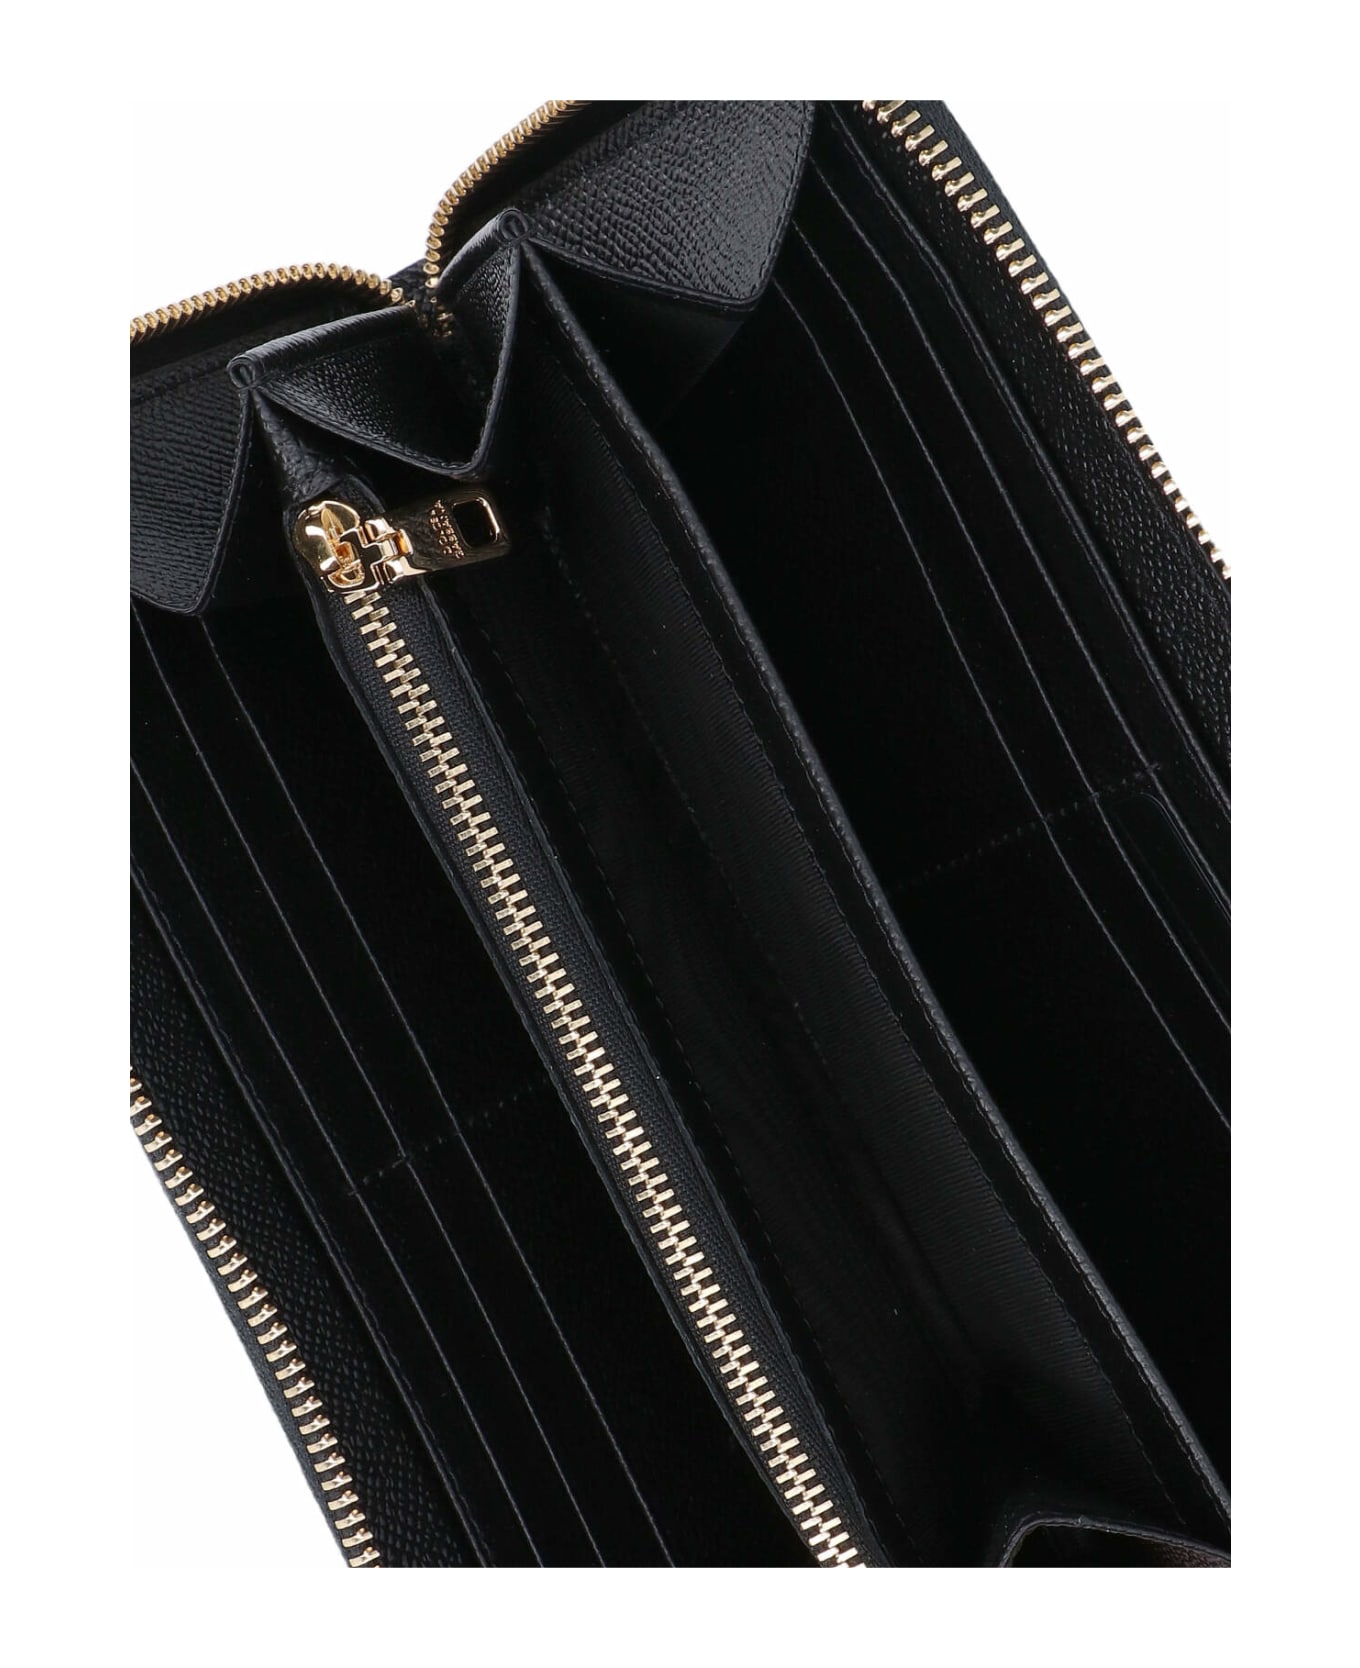 Dolce & Gabbana Zip-around Wallet - Black   財布